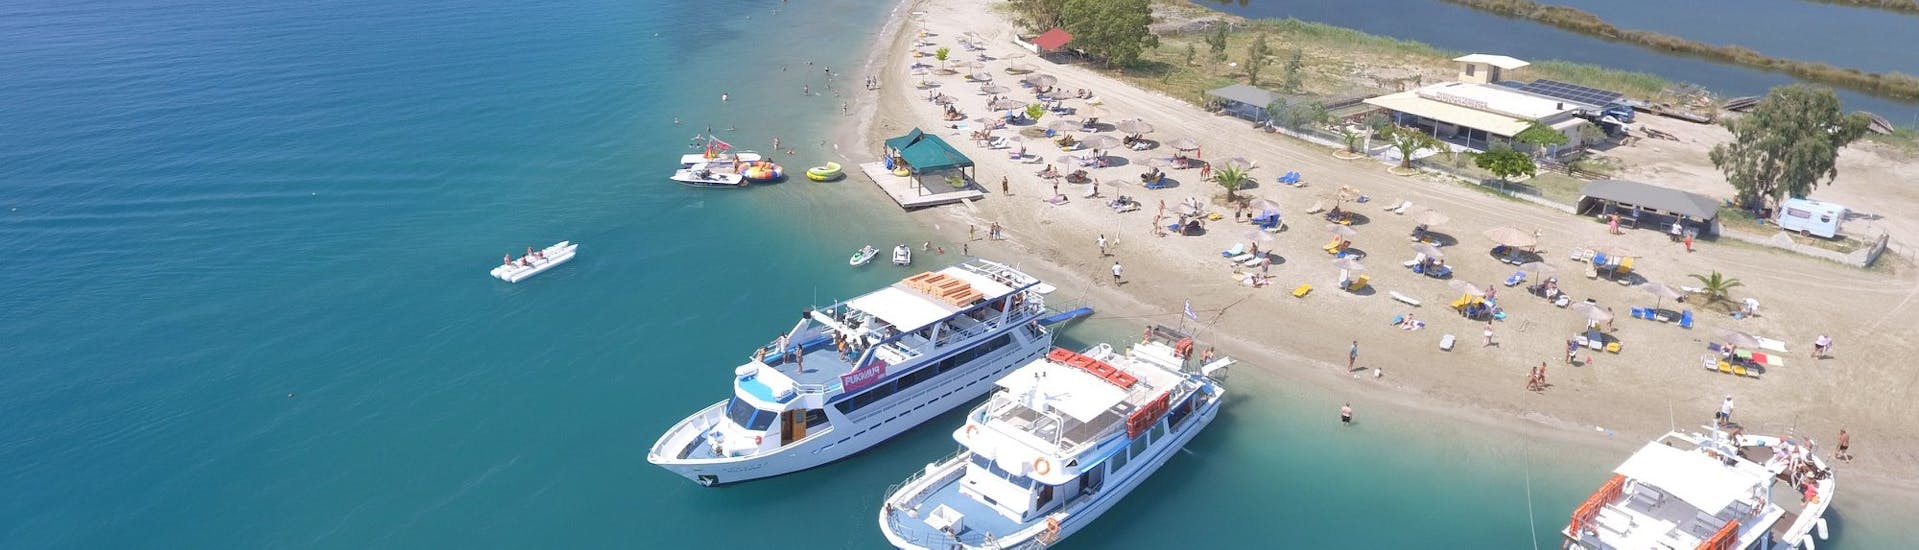 Paseo en barco de Corfu Town a Vido island con baño en el mar & visita guiada.